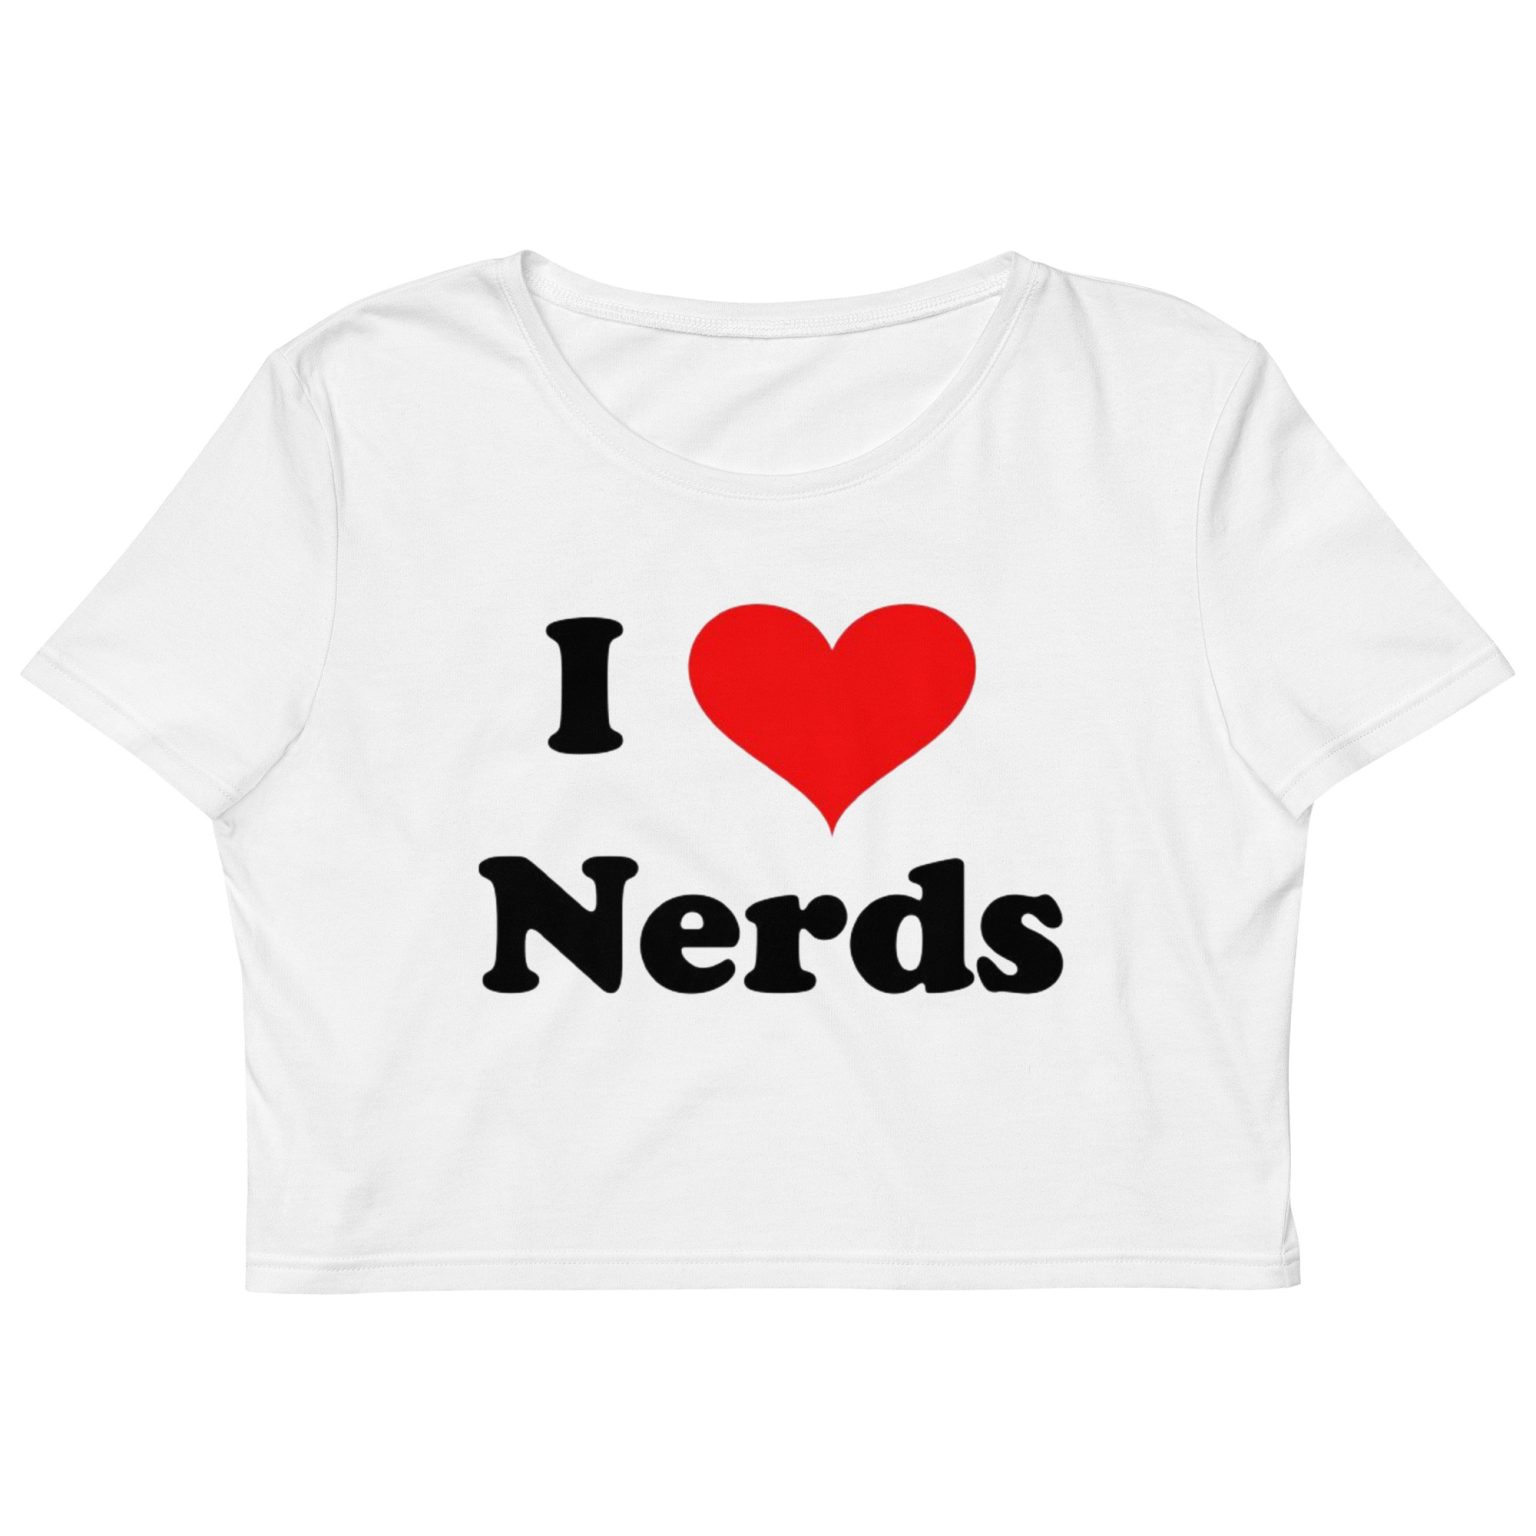 I LOVE nerds